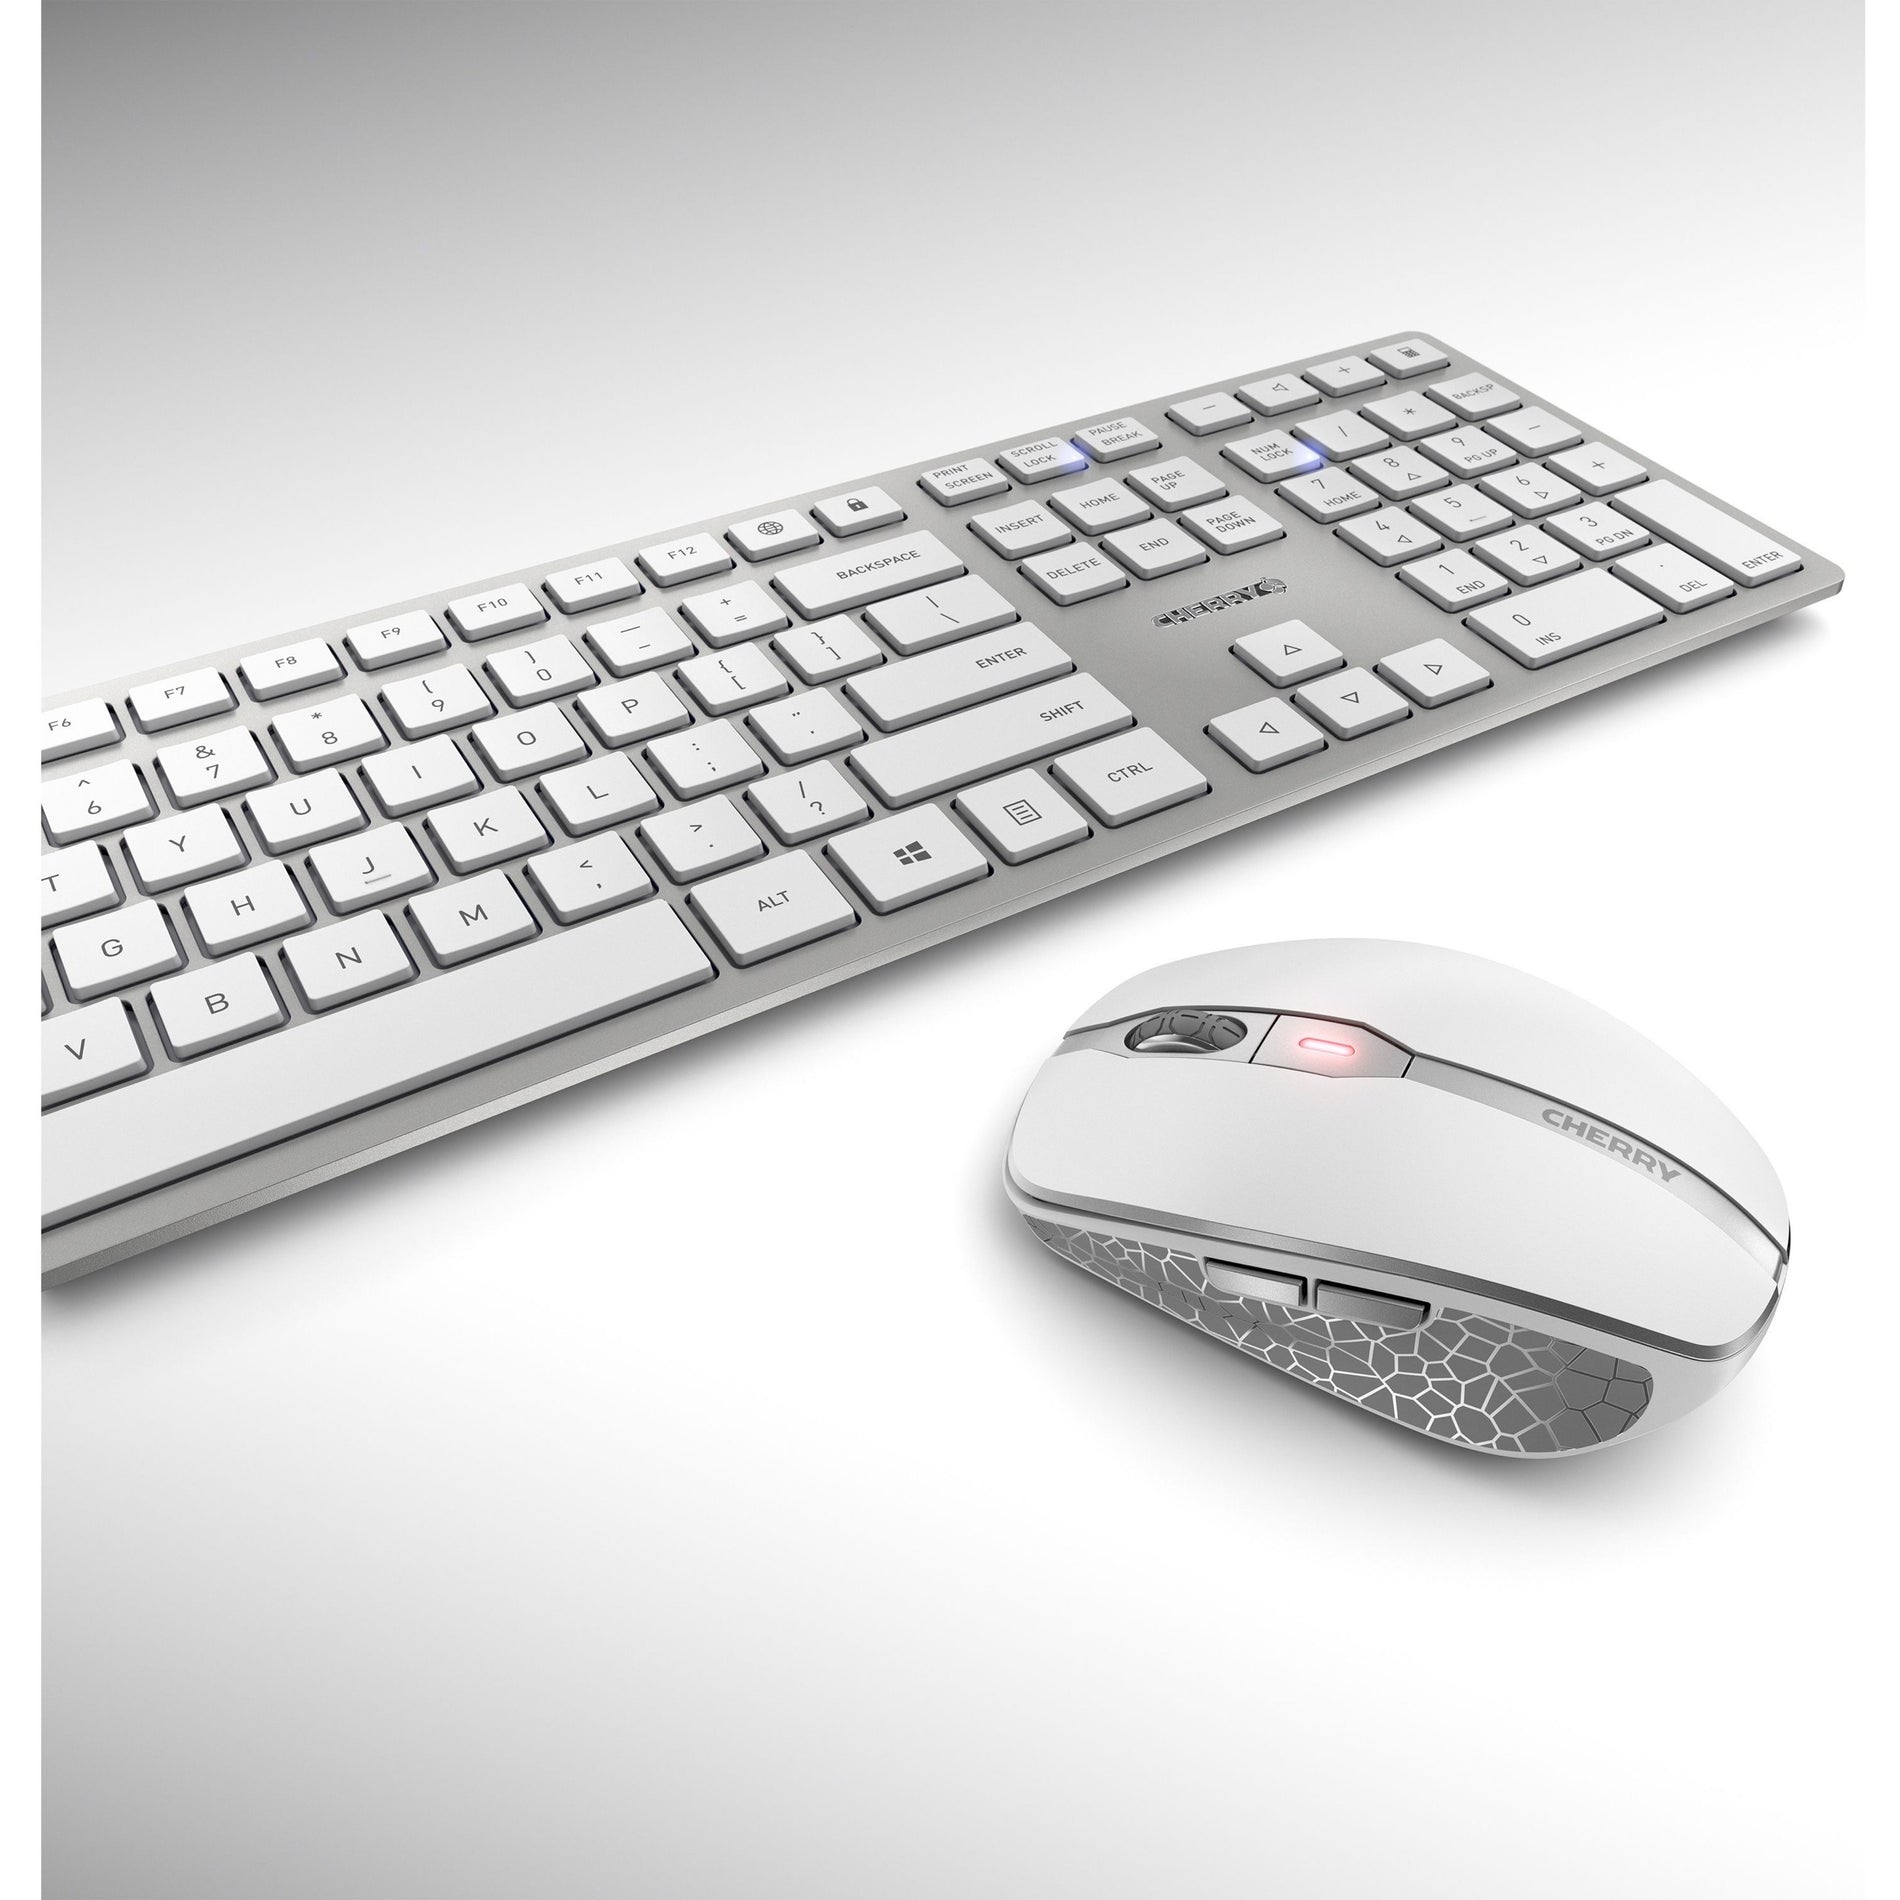 CHERRY JD-9100US-1 DW 9100 SLIM Combo de teclado y ratón inalámbricos recargables de escritorio plata/blanco USB Marca: CEREZA